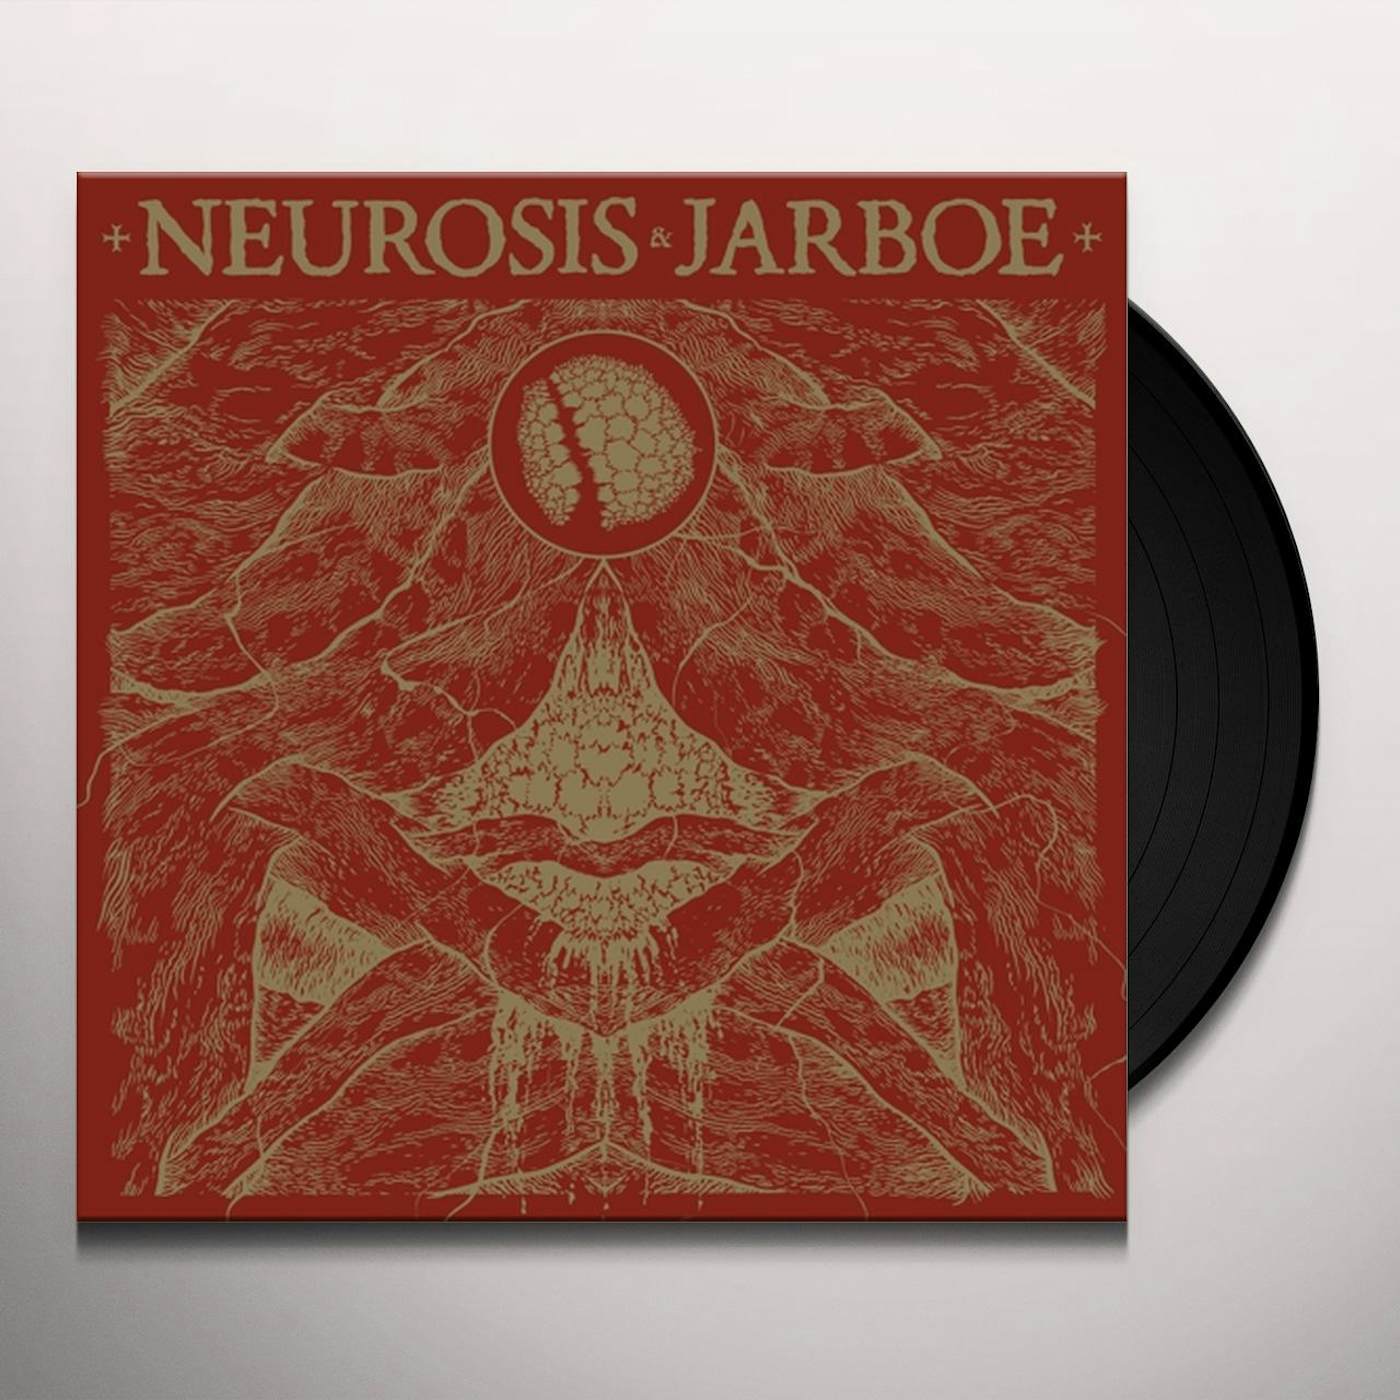 NEUROSIS & JARBOE REISSUE Vinyl Record